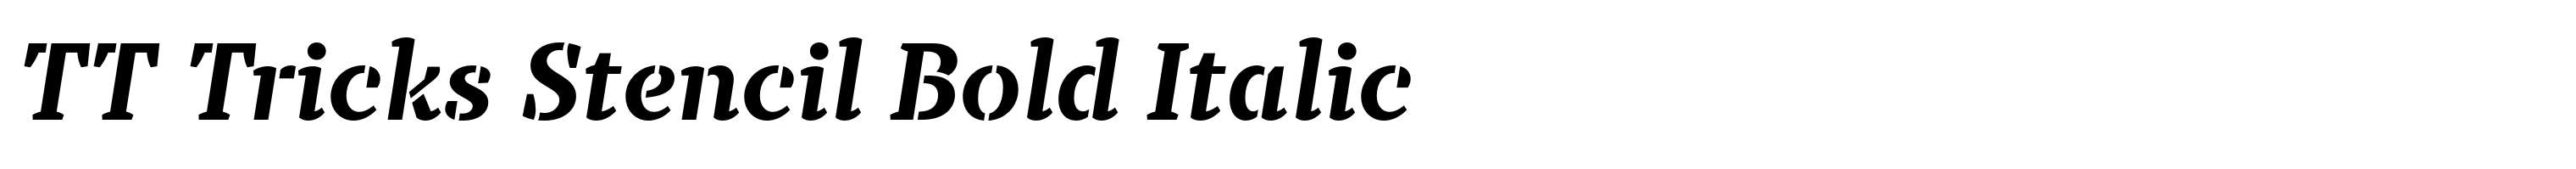 TT Tricks Stencil Bold Italic